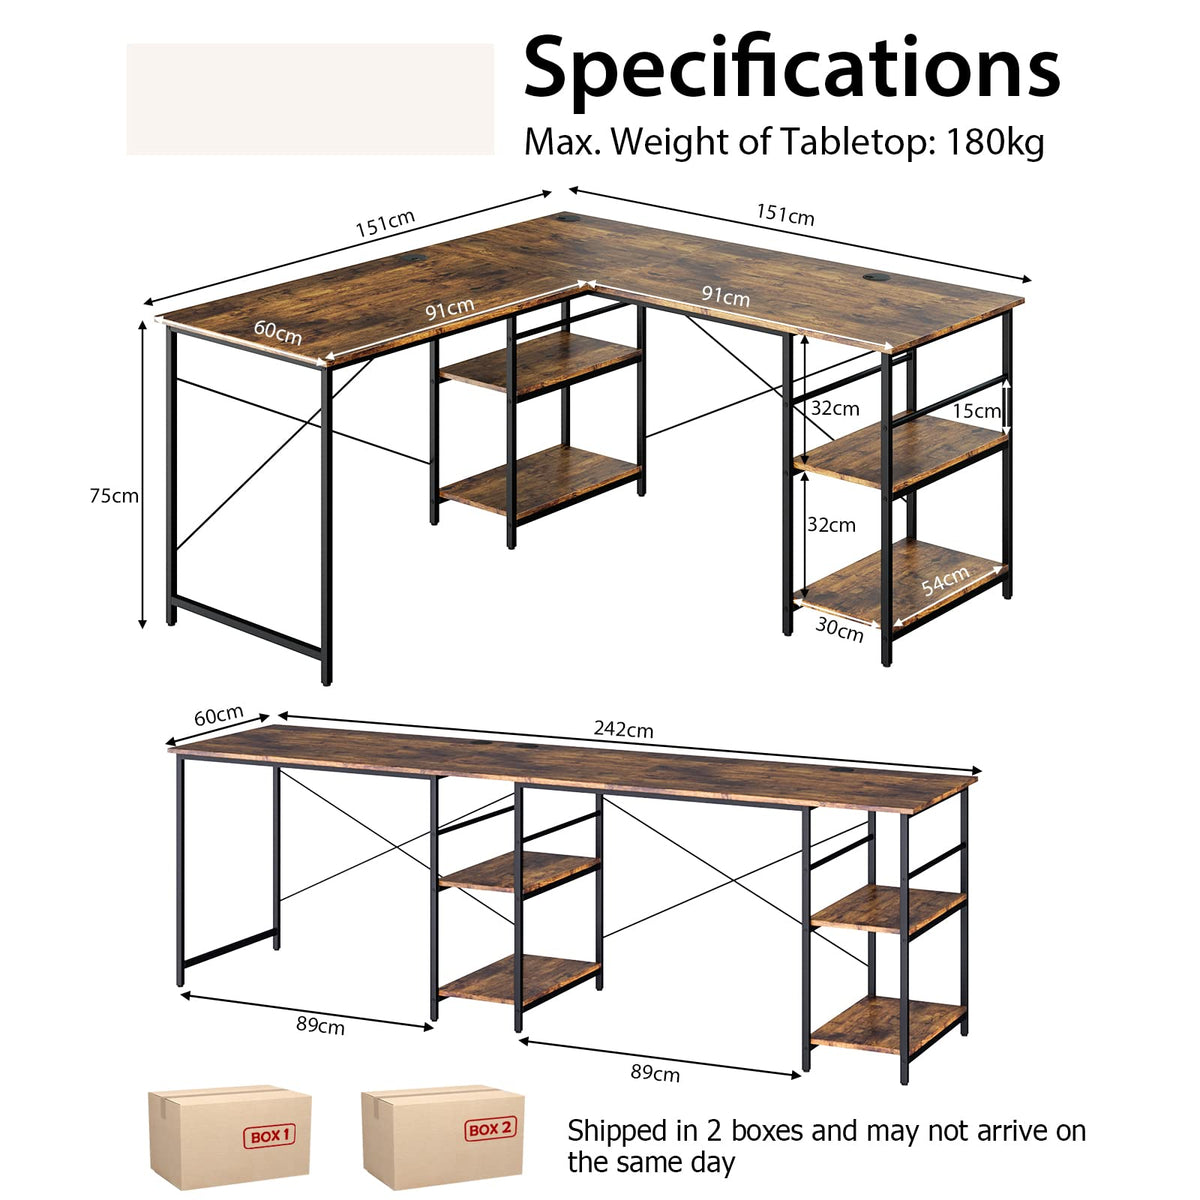 Giantex L-Shaped Desk with Storage Shelves, 242cm Wooden Corner Desk